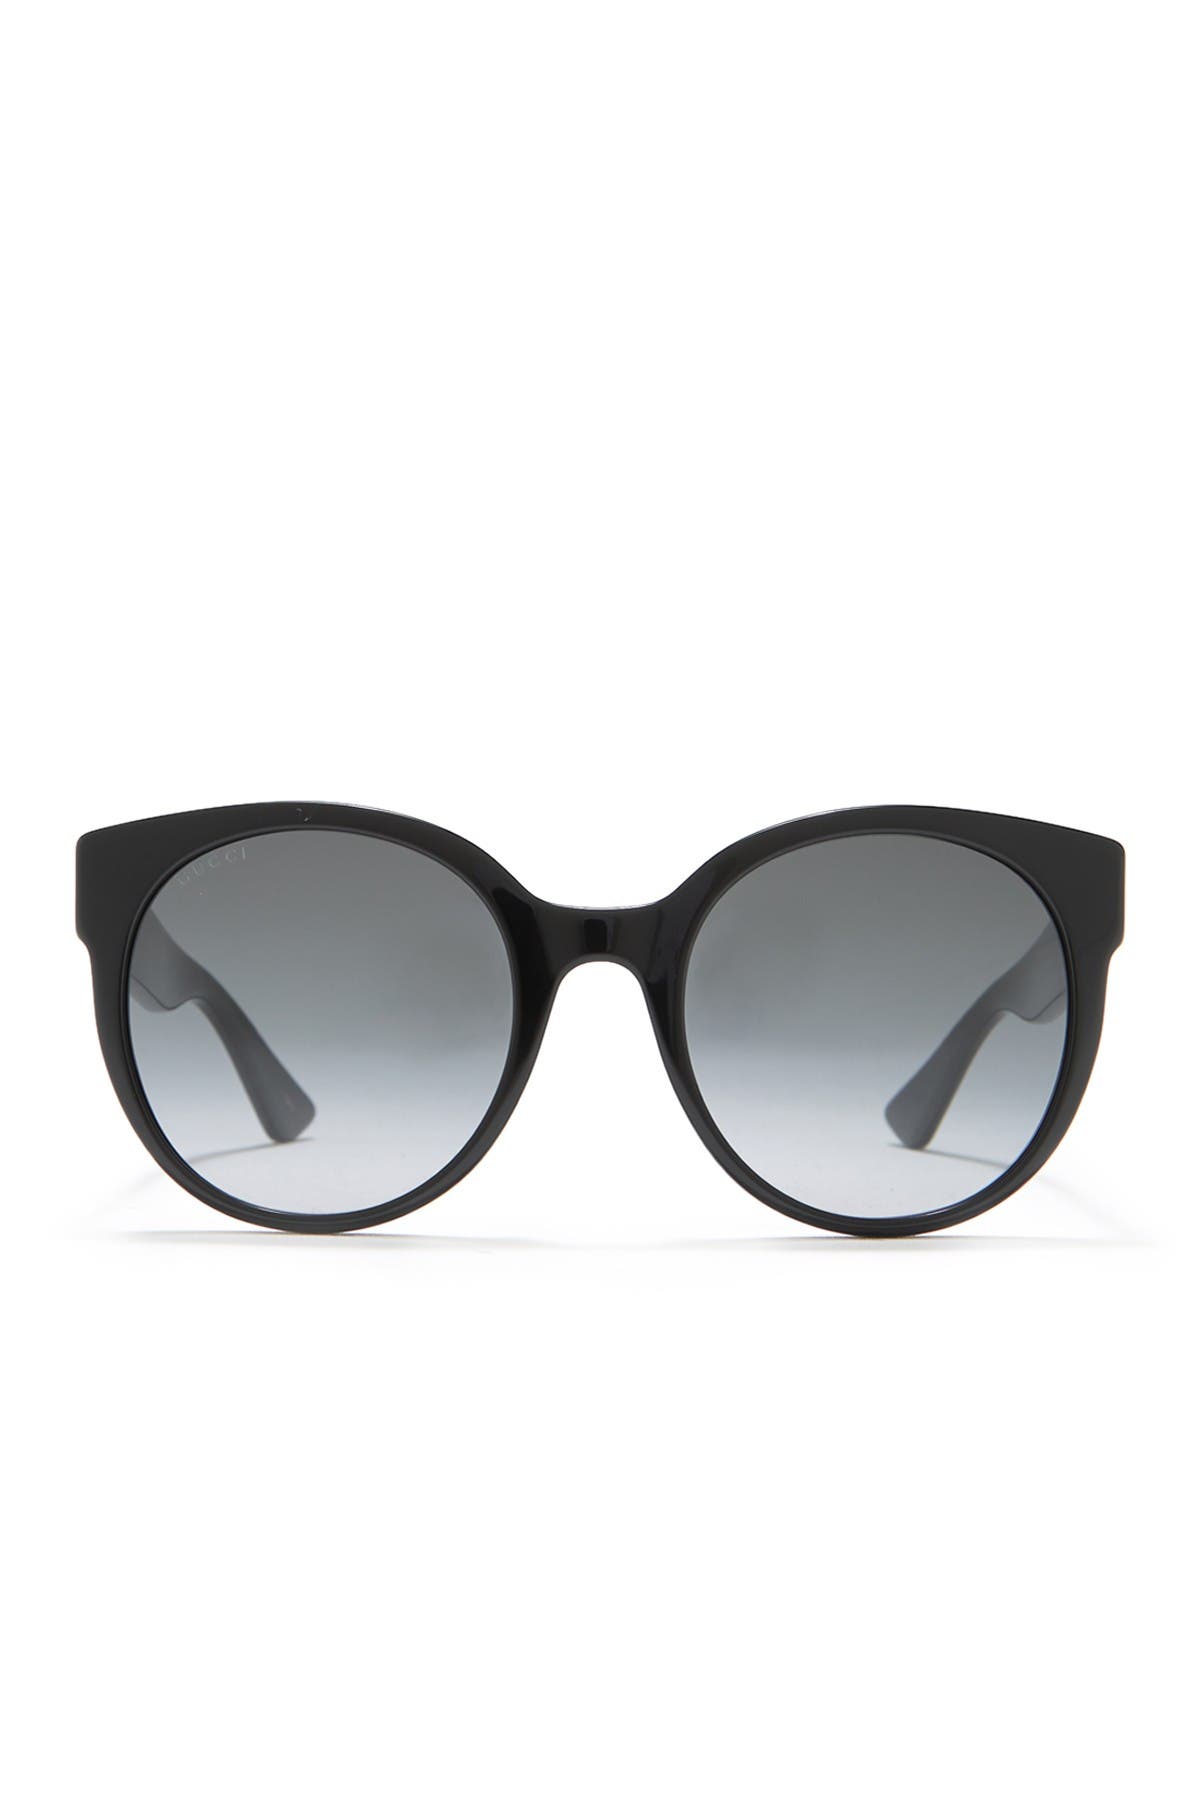 gucci 54mm round sunglasses